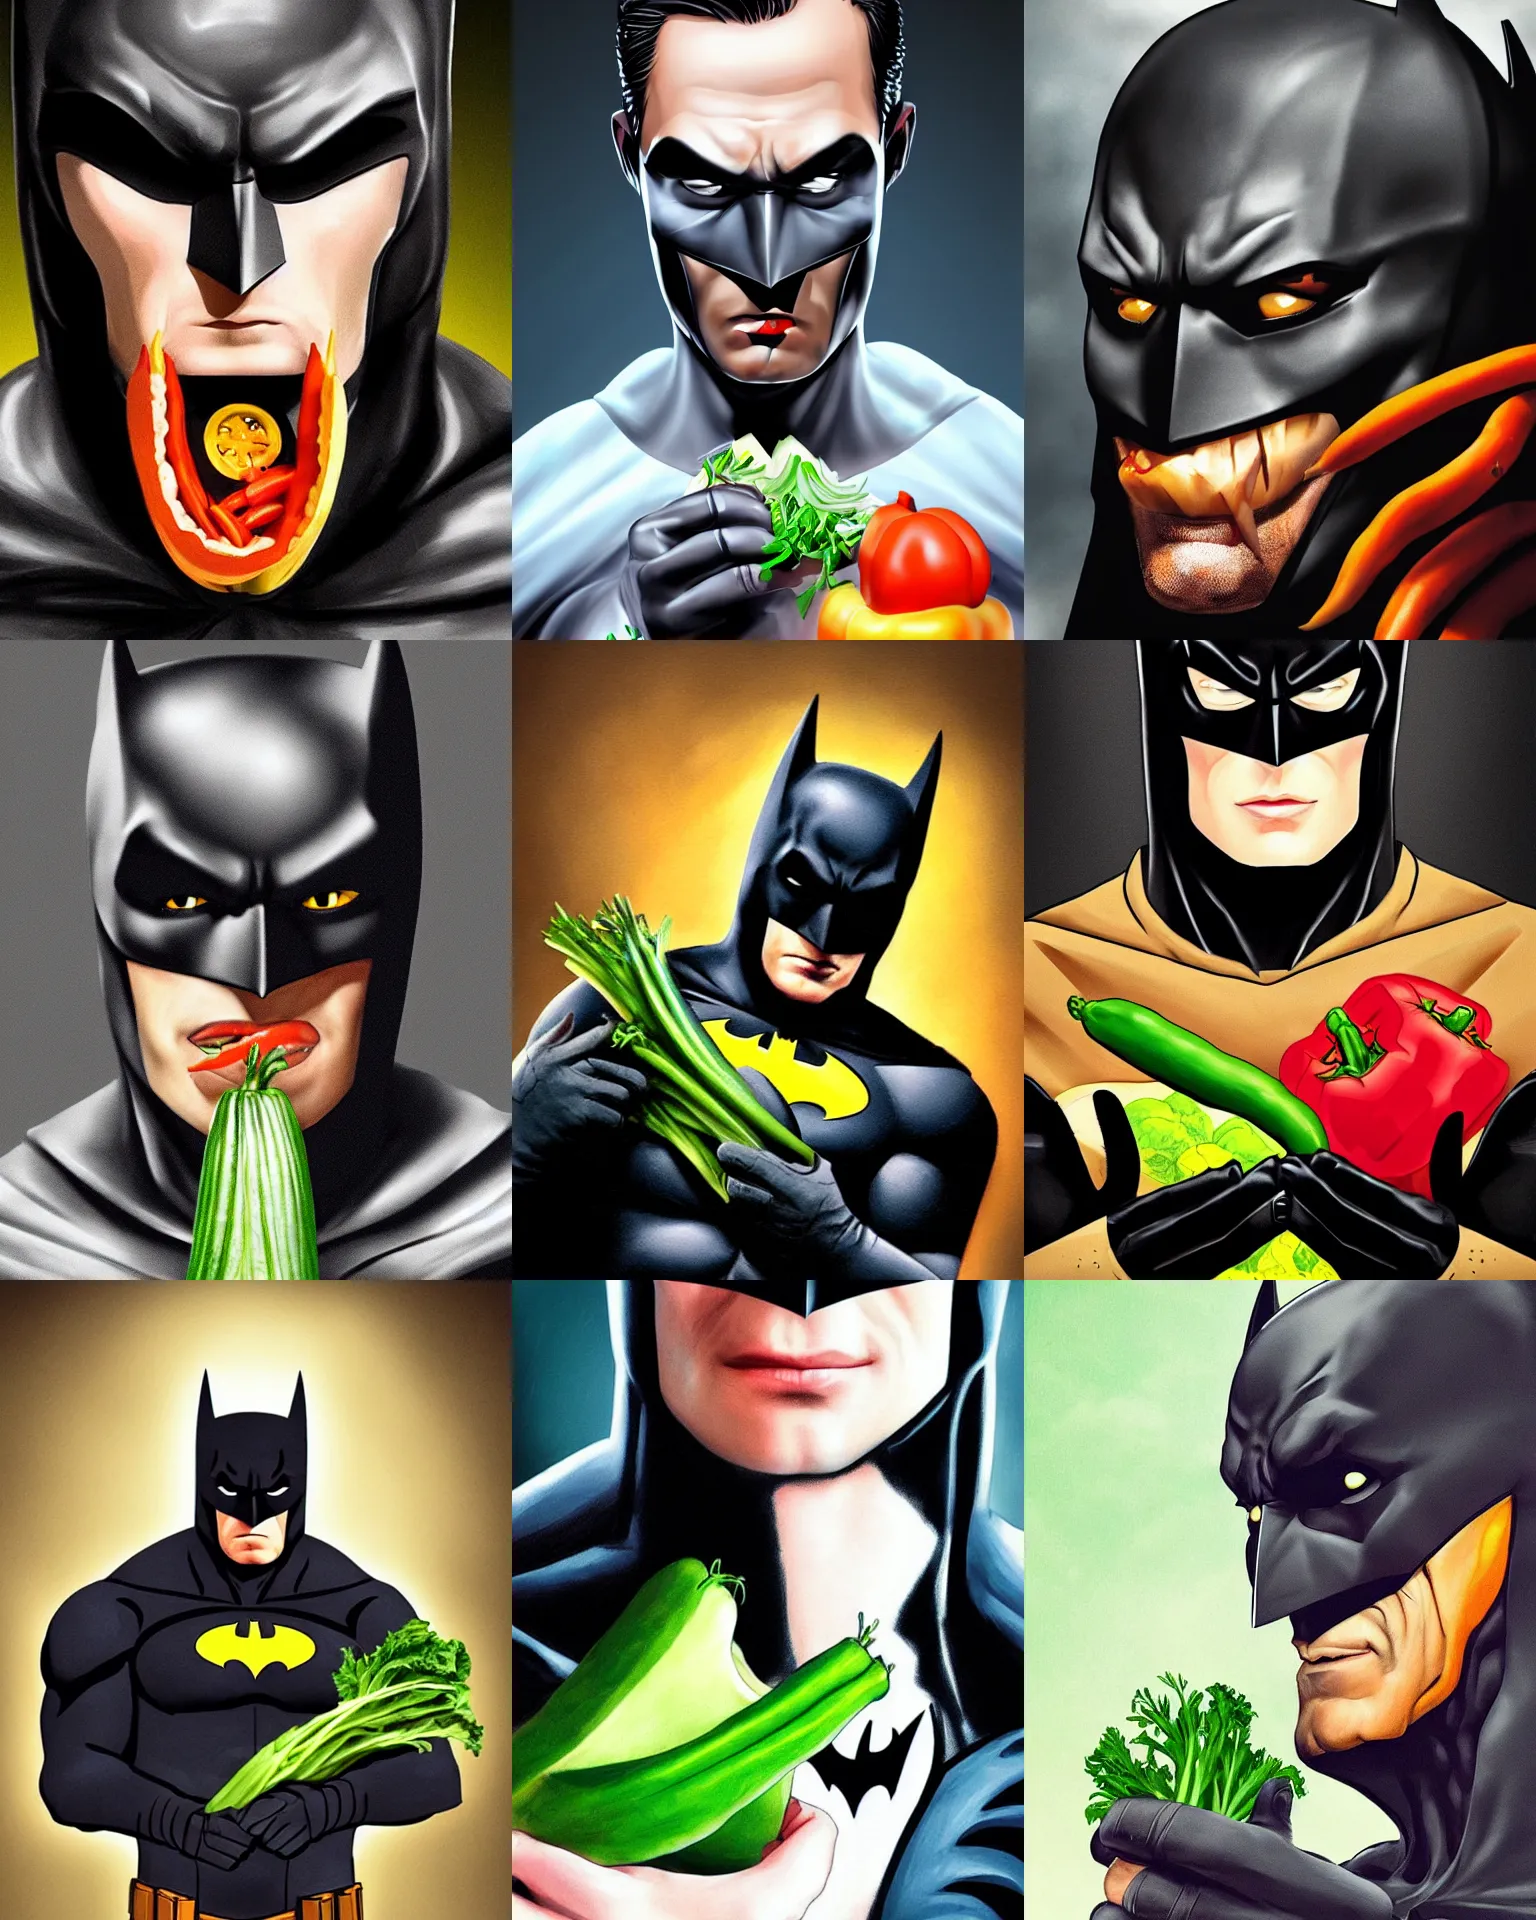 Image similar to A stunning portrait of Batman eating vegetable, Trending on Artstation, 8K